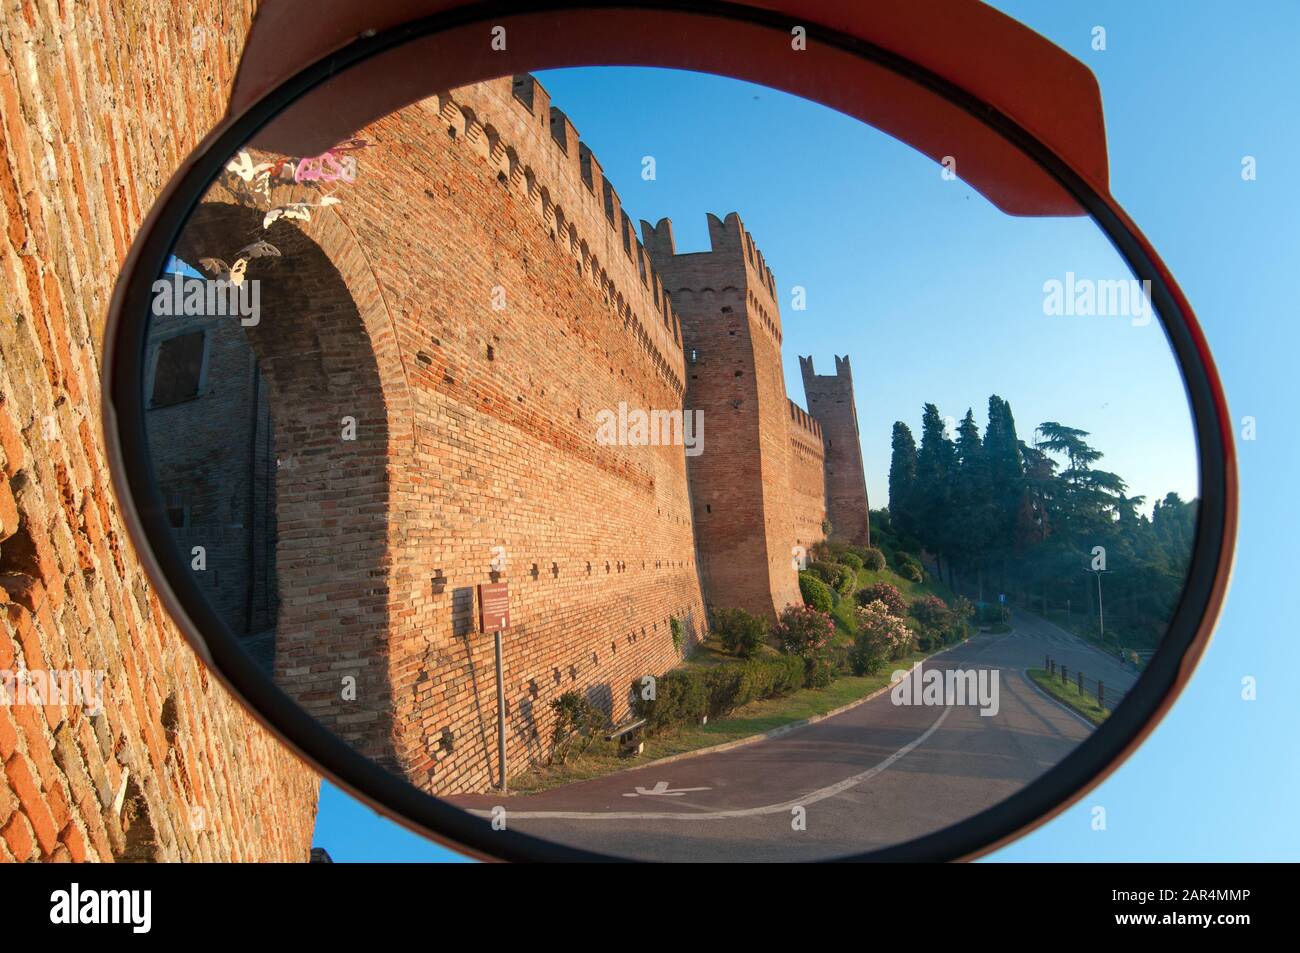 Murs de Gradara, château médiéval-forteresse près de rimini pris de l'extérieur dans une vue miroir de rue Banque D'Images